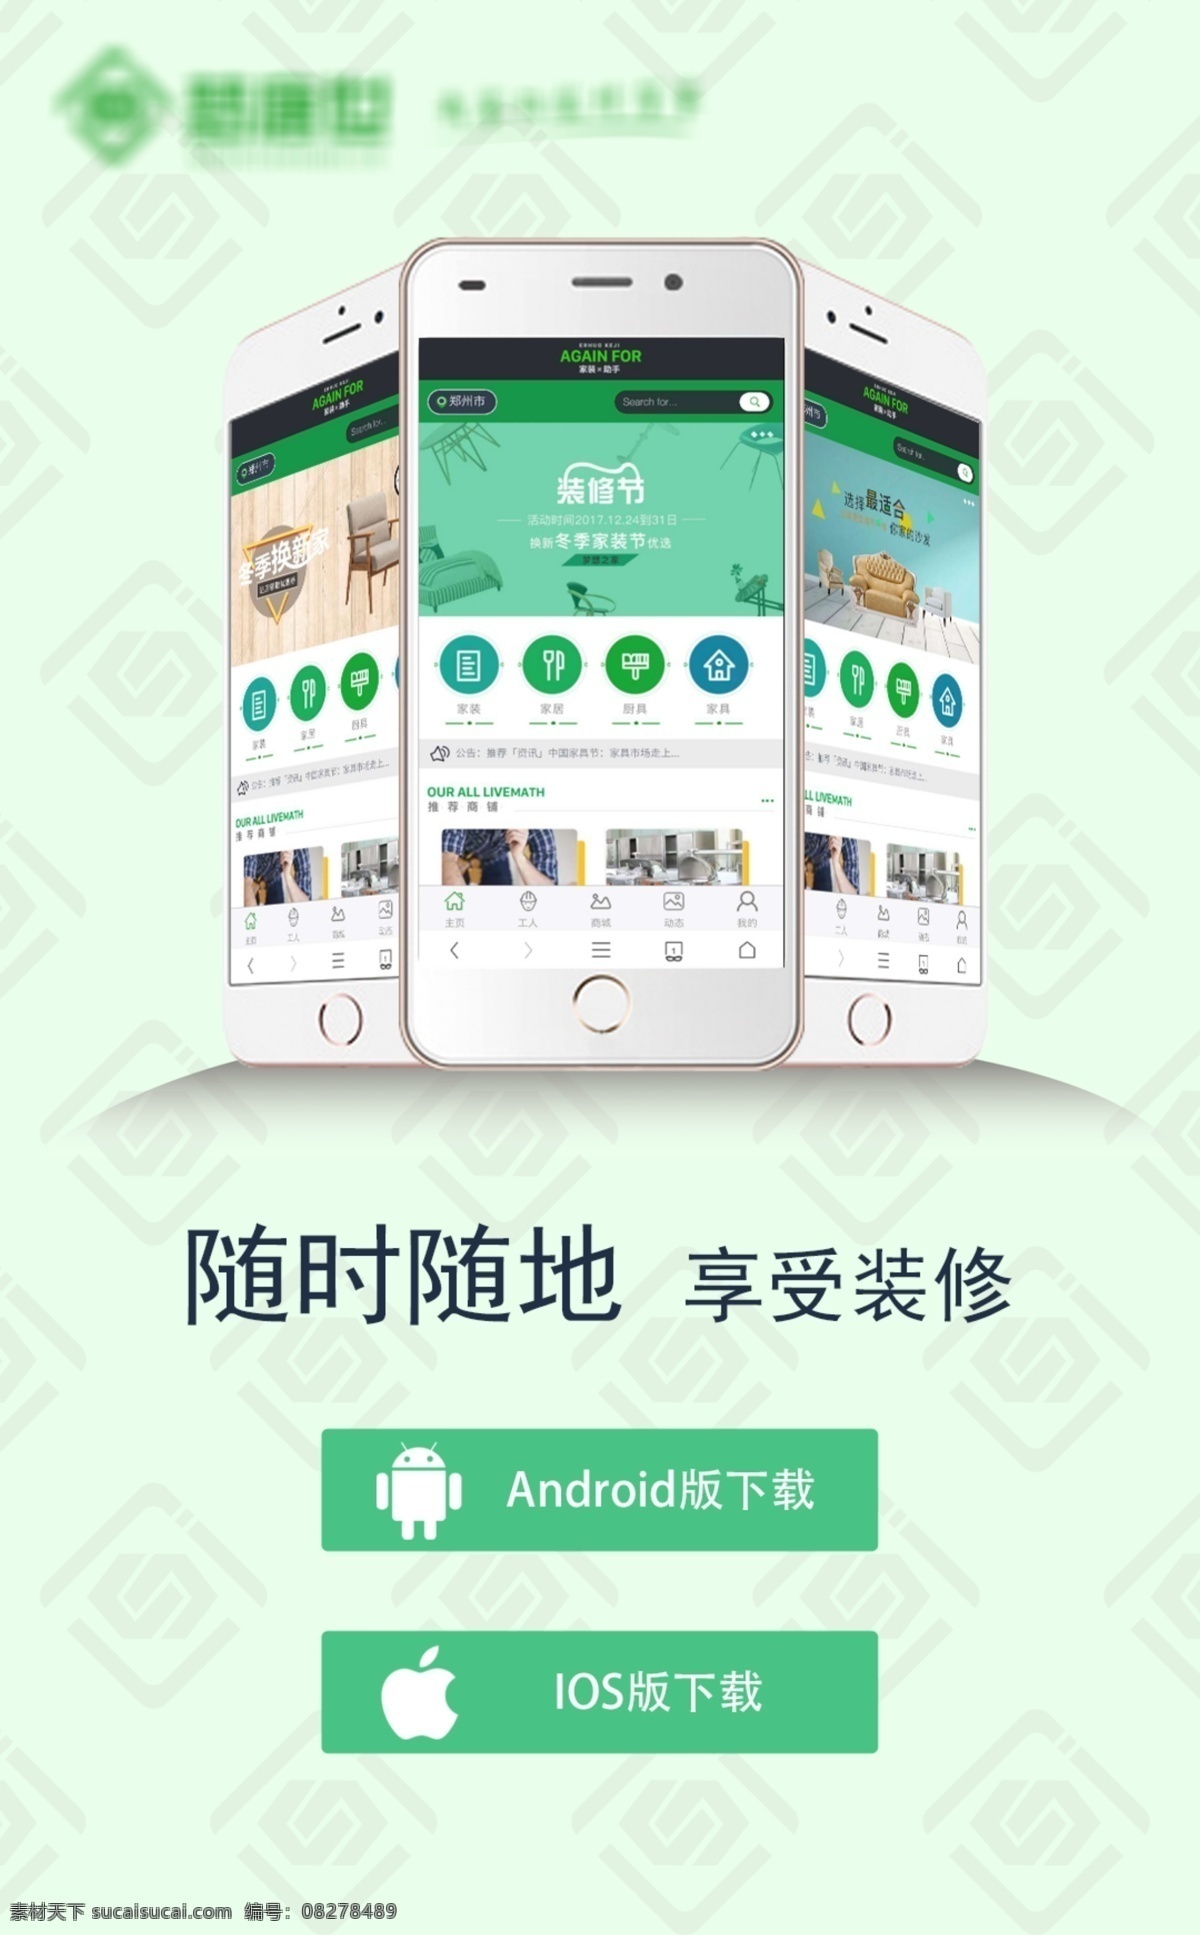 app 推广 海报 随时随地 推广宣传 下载端口 享受装修